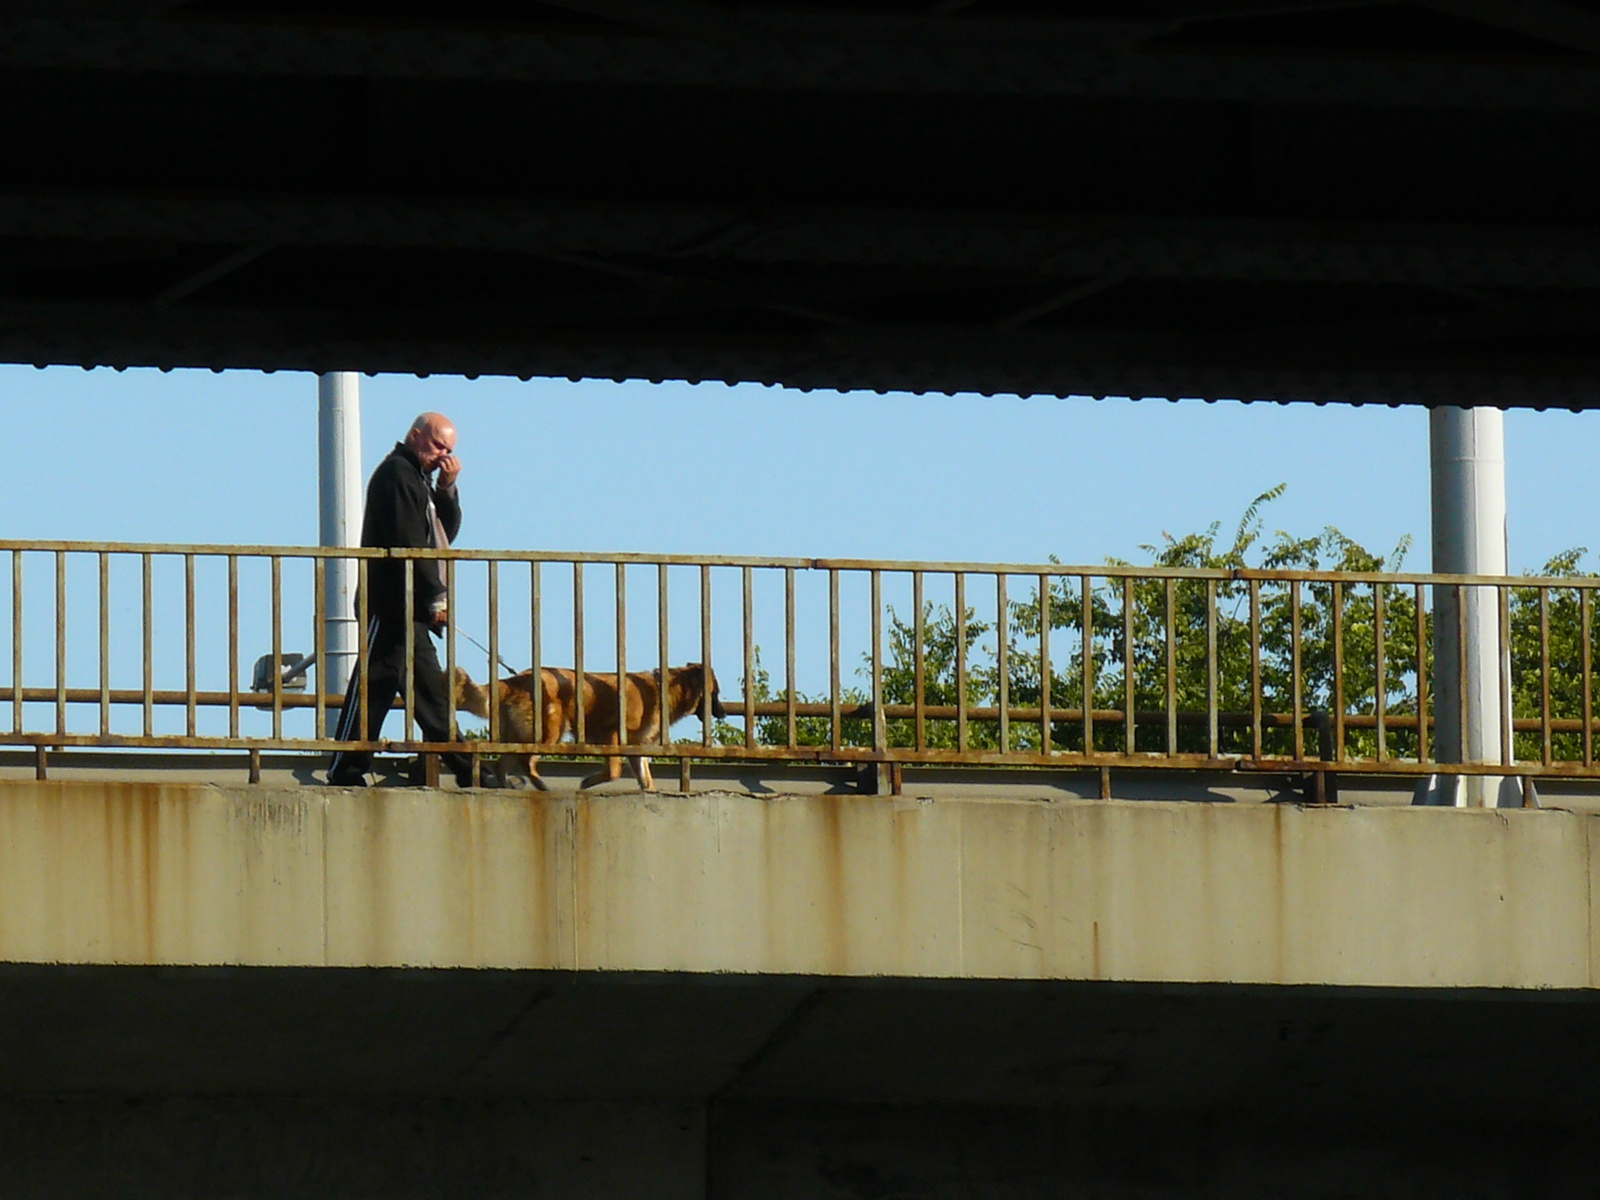 Kutyasétáltató a hídon